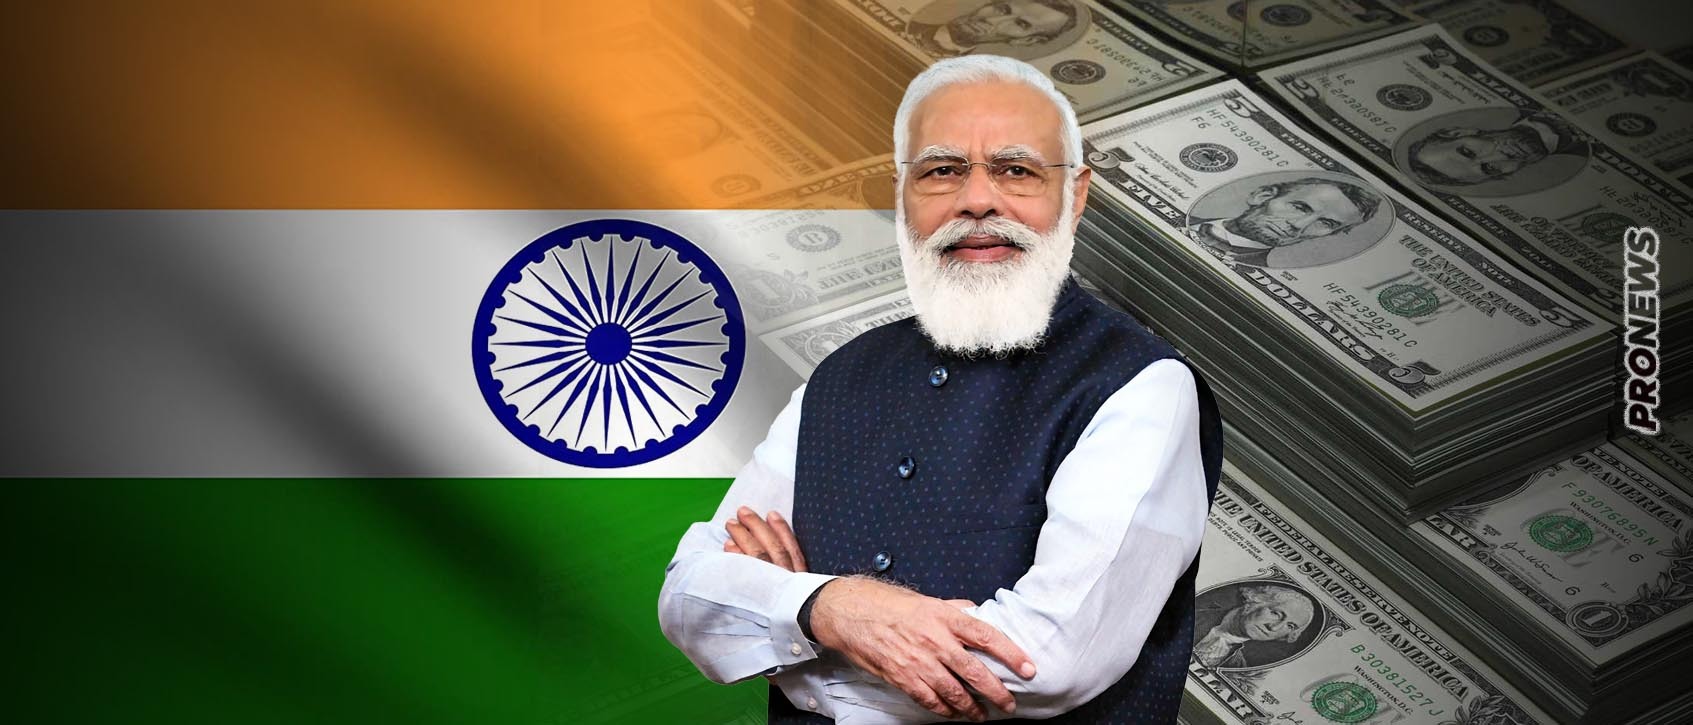 Οι Ινδοί σταματούν να χρησιμοποιούν το δολάριο από το 2025! – Η 1η σε πληθυσμό & 5η οικονομία του κόσμου αποδολαριοποιεί όλες τις συναλλαγές της